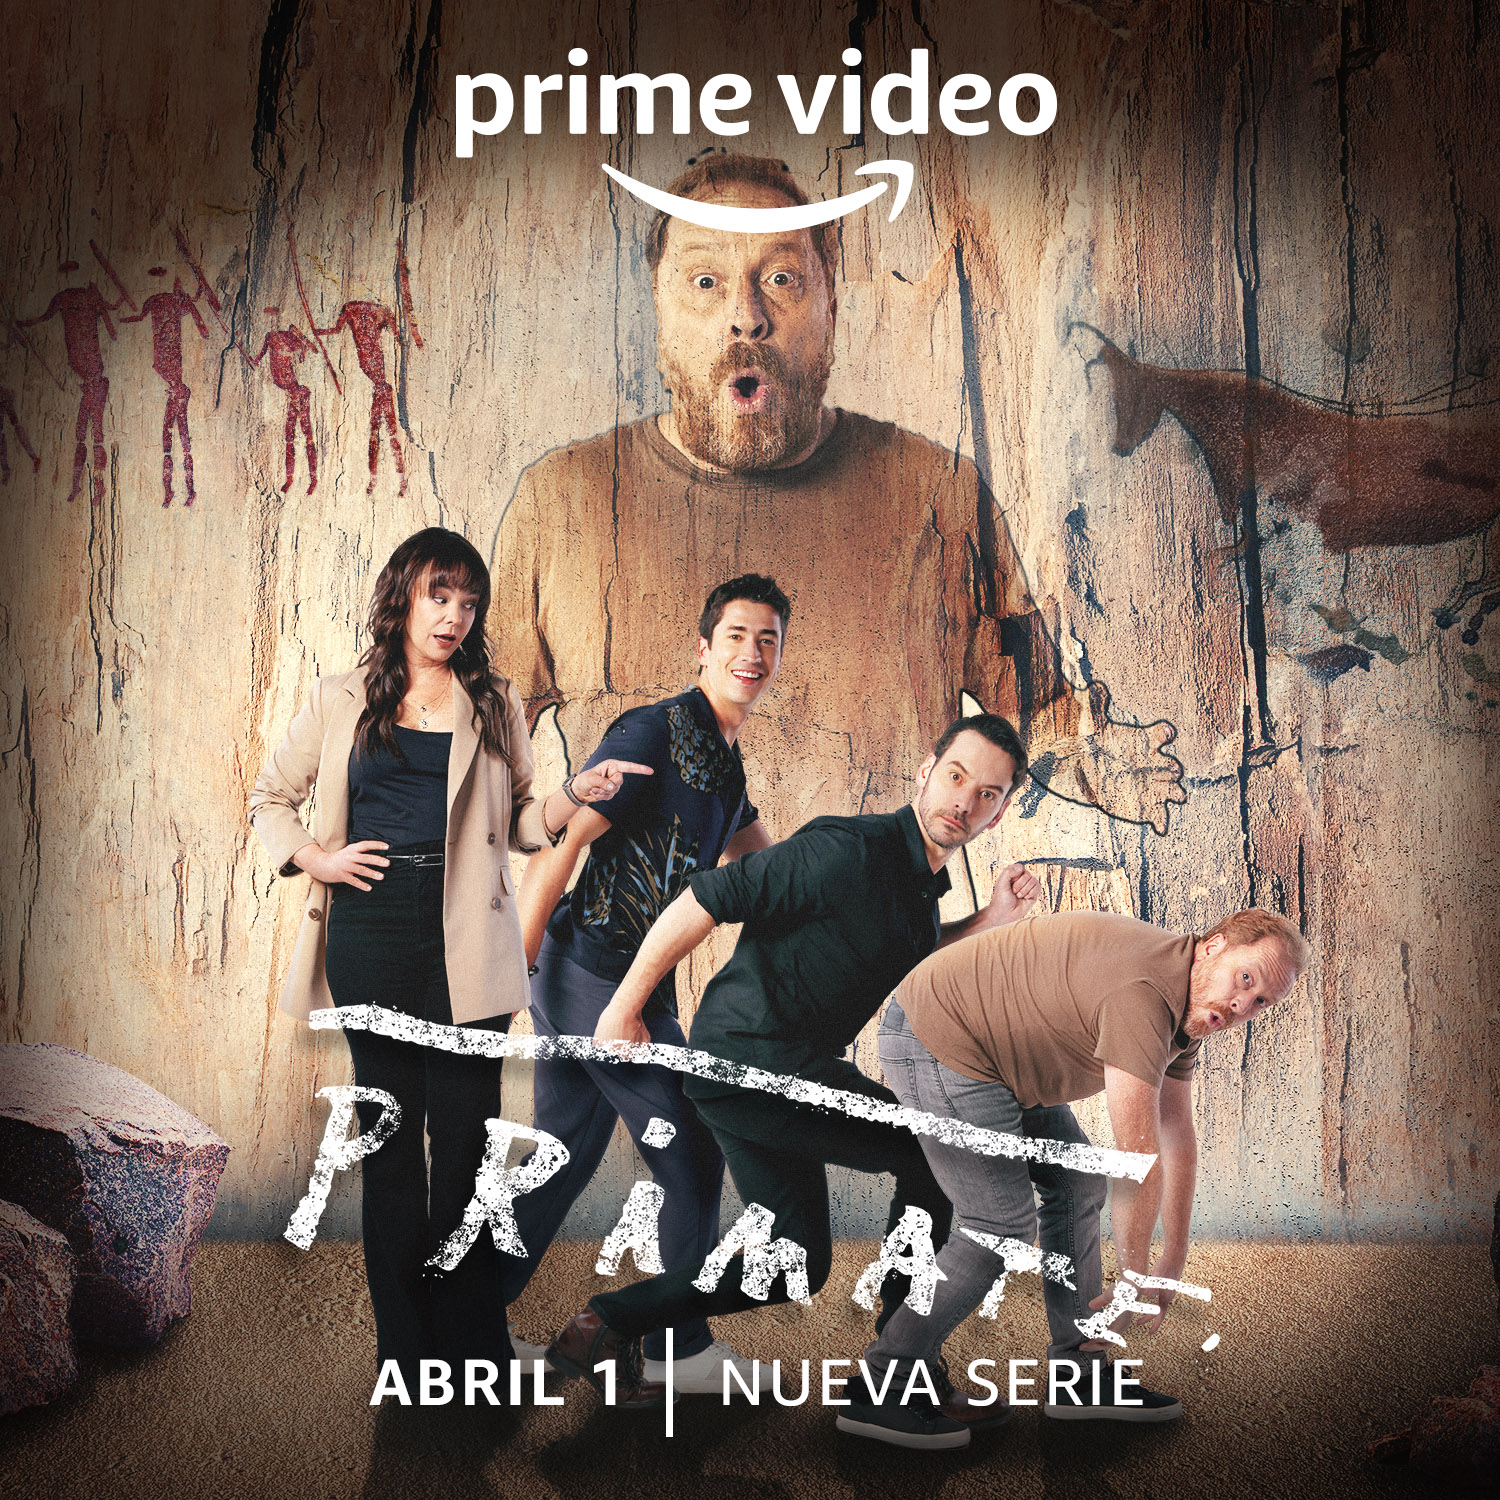 Foto de Prime Video reveló el tráiler y arte oficial de la esperada serie colombiana, Primate